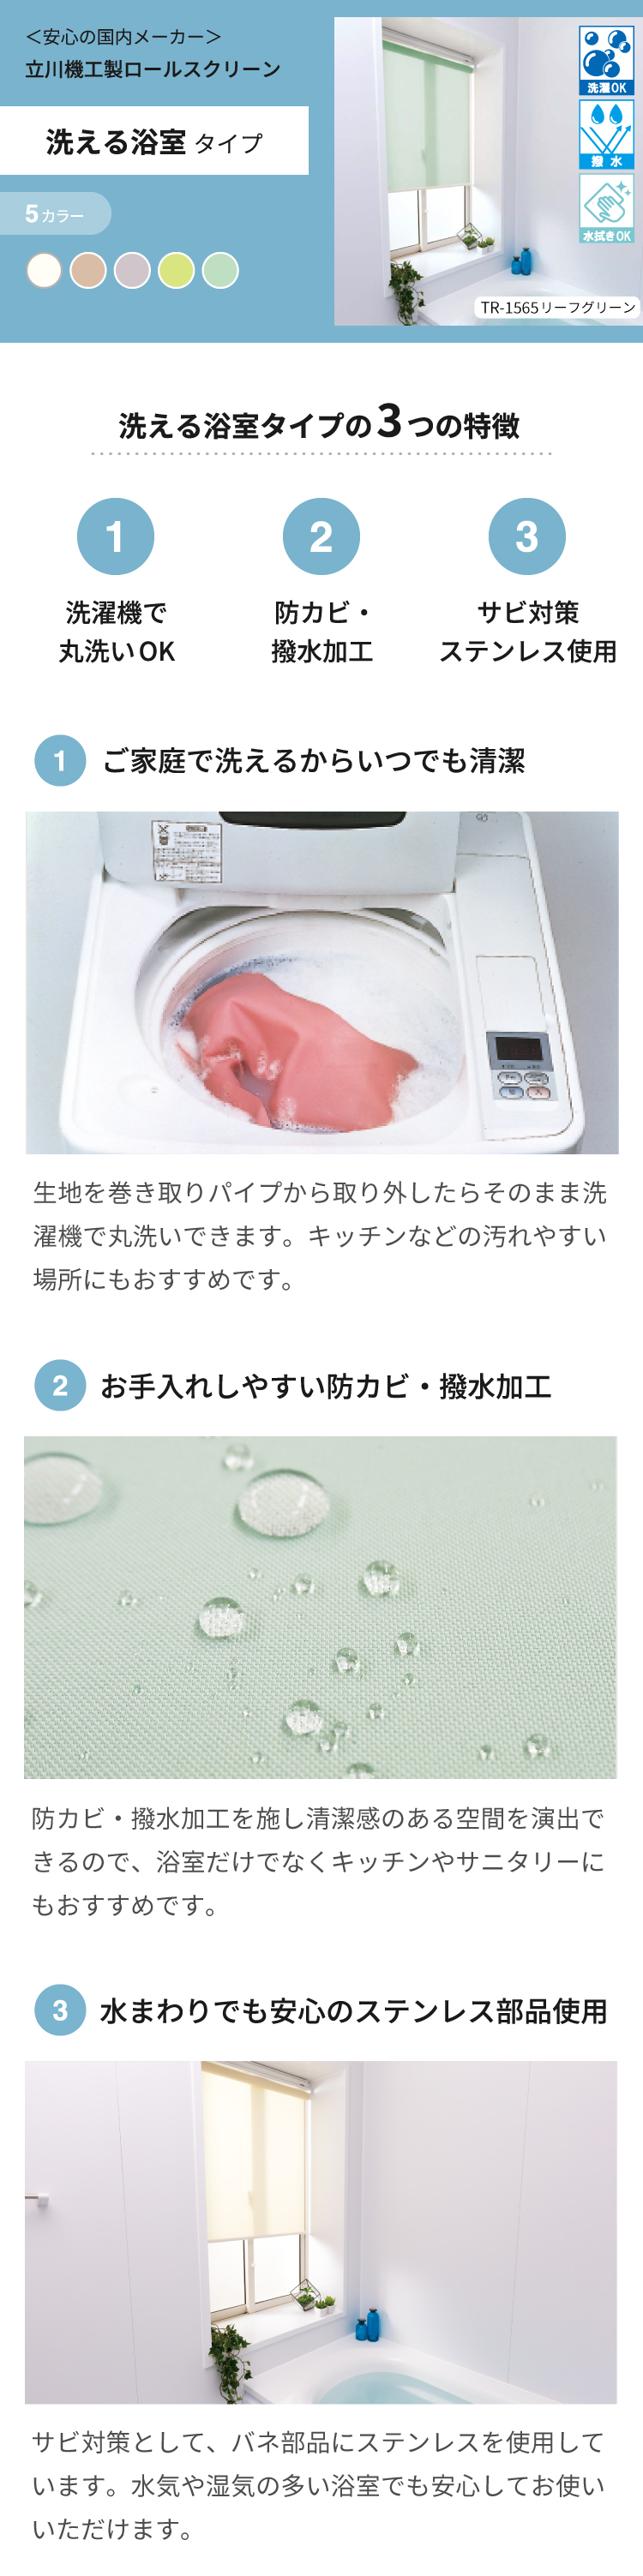 [国産]立川機工ロールスクリーン 洗える浴室タイプはRehome / Re:HOME